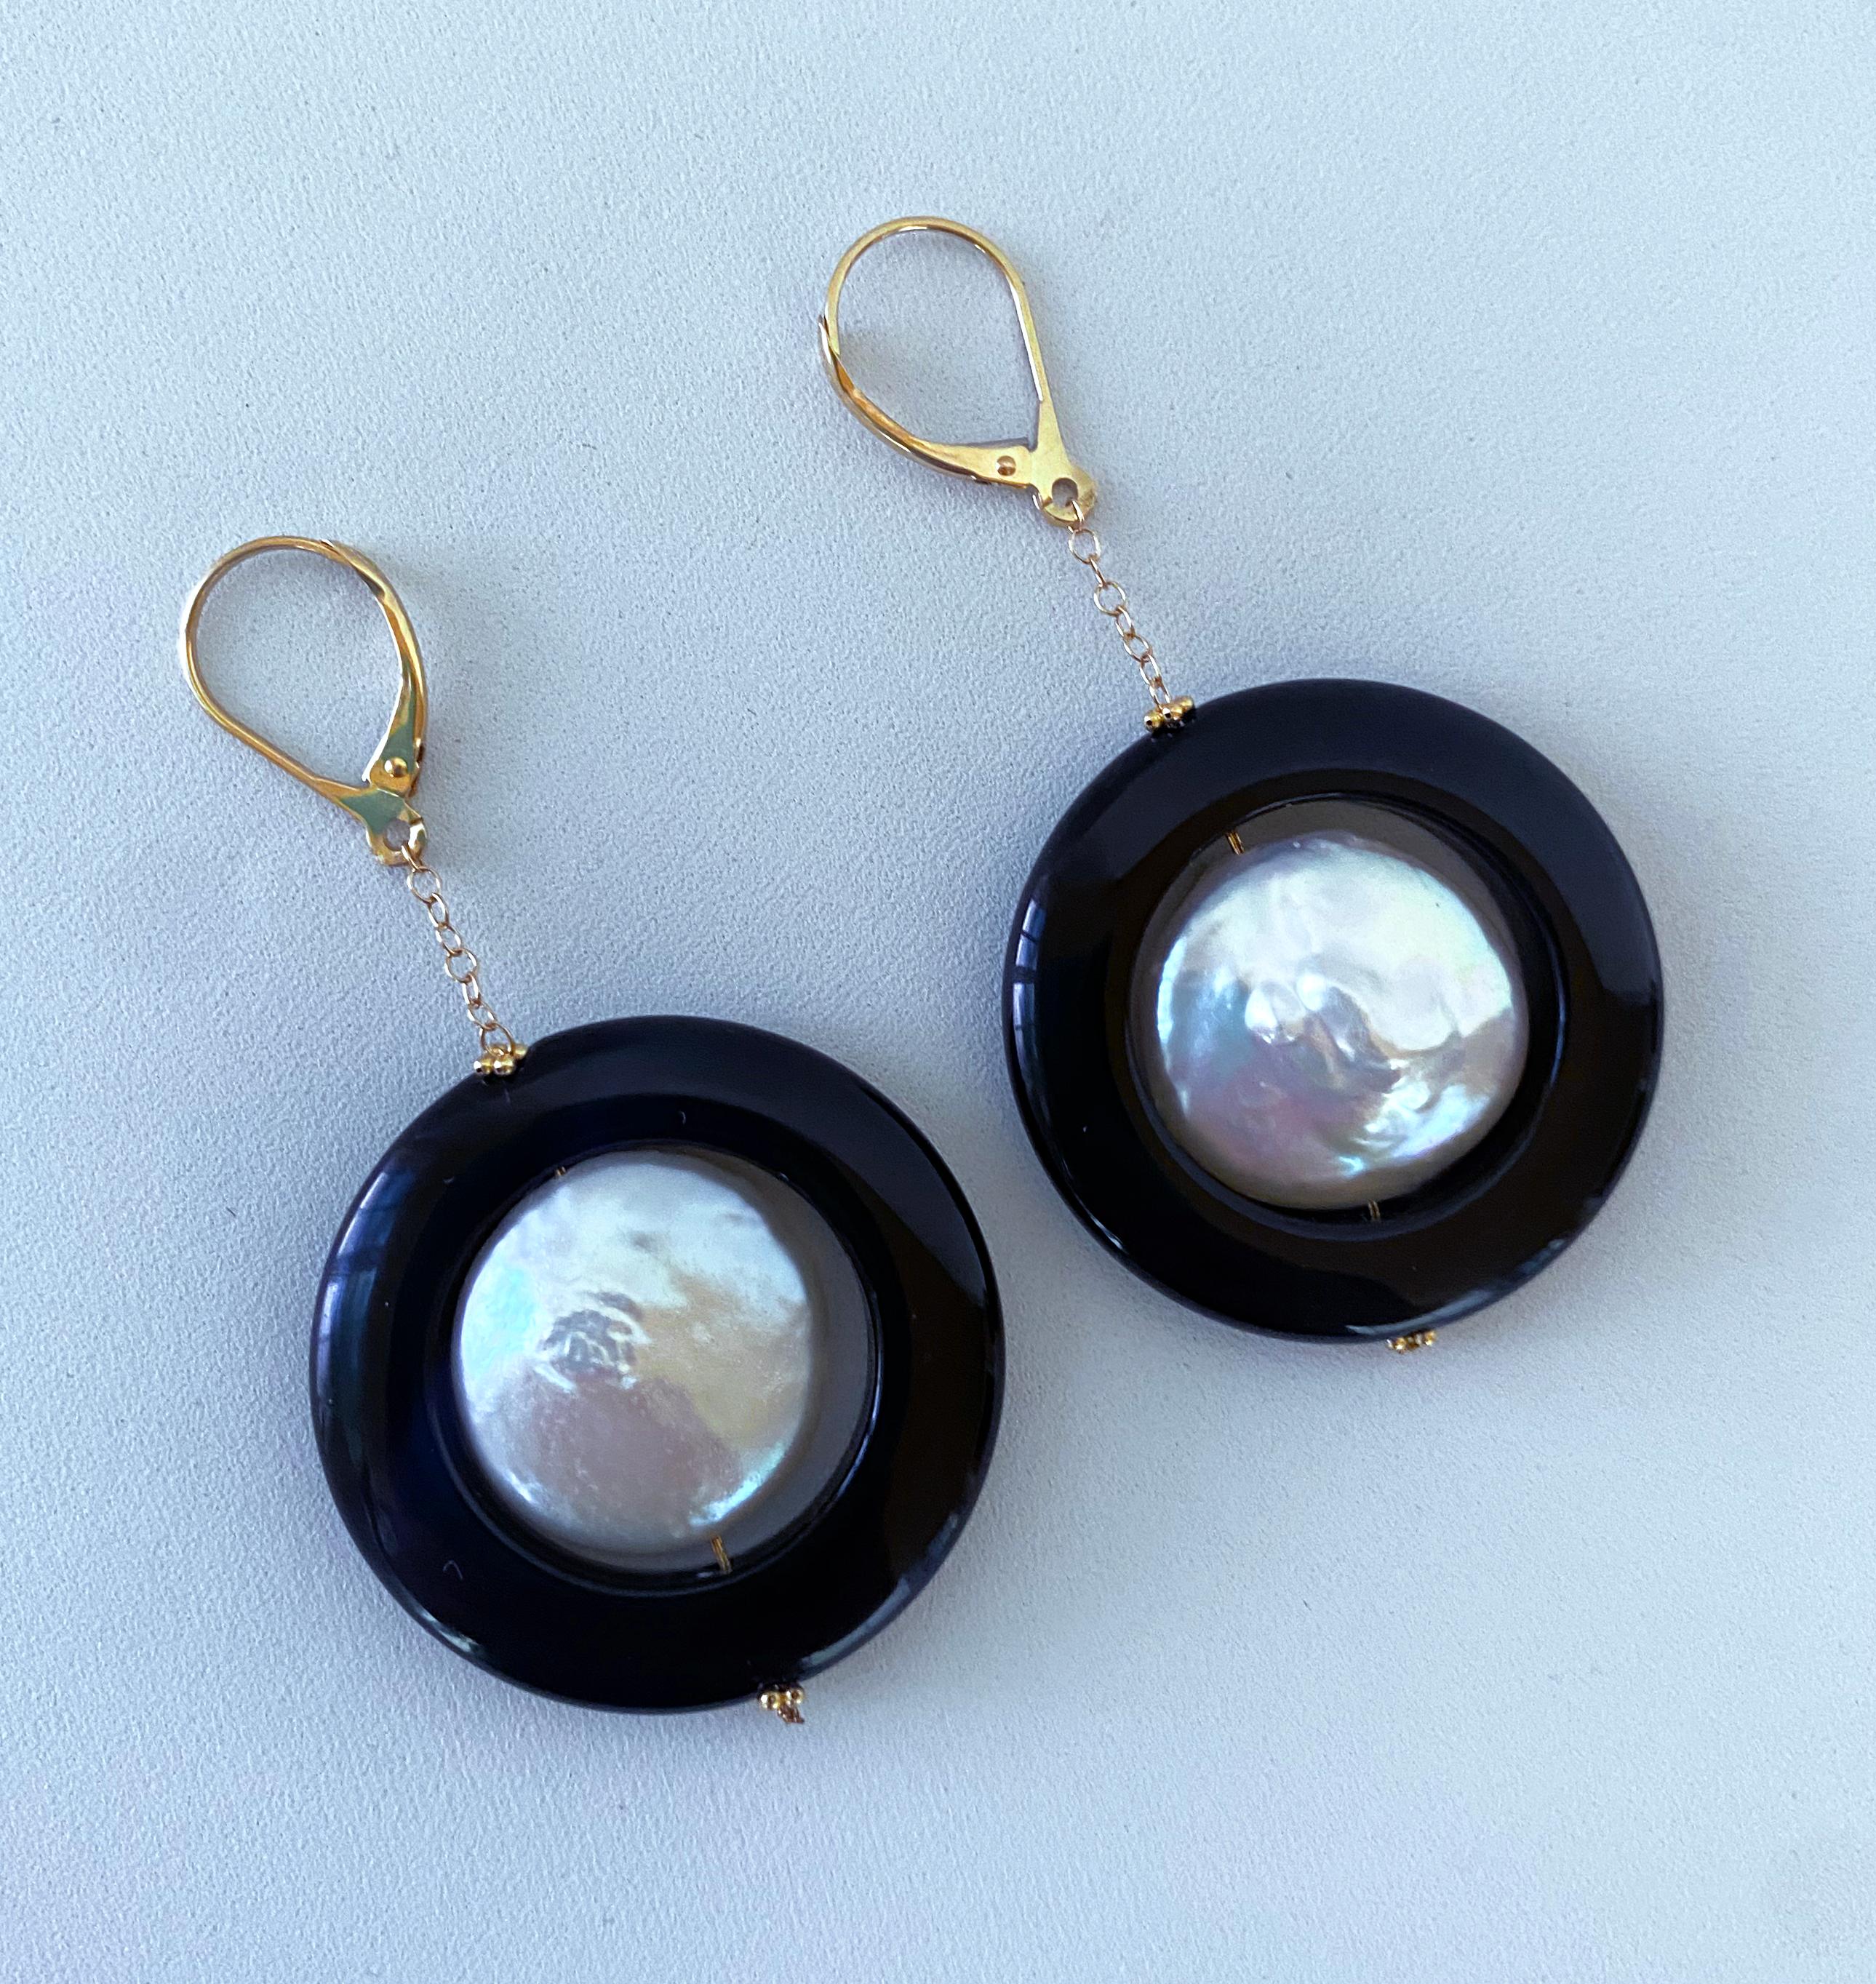 Wunderschönes Paar Ohrringe von Marina J. Dieses Paar besteht aus zwei Barockperlen, die einen wunderschönen irisierenden Glanz aufweisen, der sanft in Rosa- und Blautönen aufblitzt. Die Perlen hängen in einem Ring aus schwarzem Onyx, der an einem